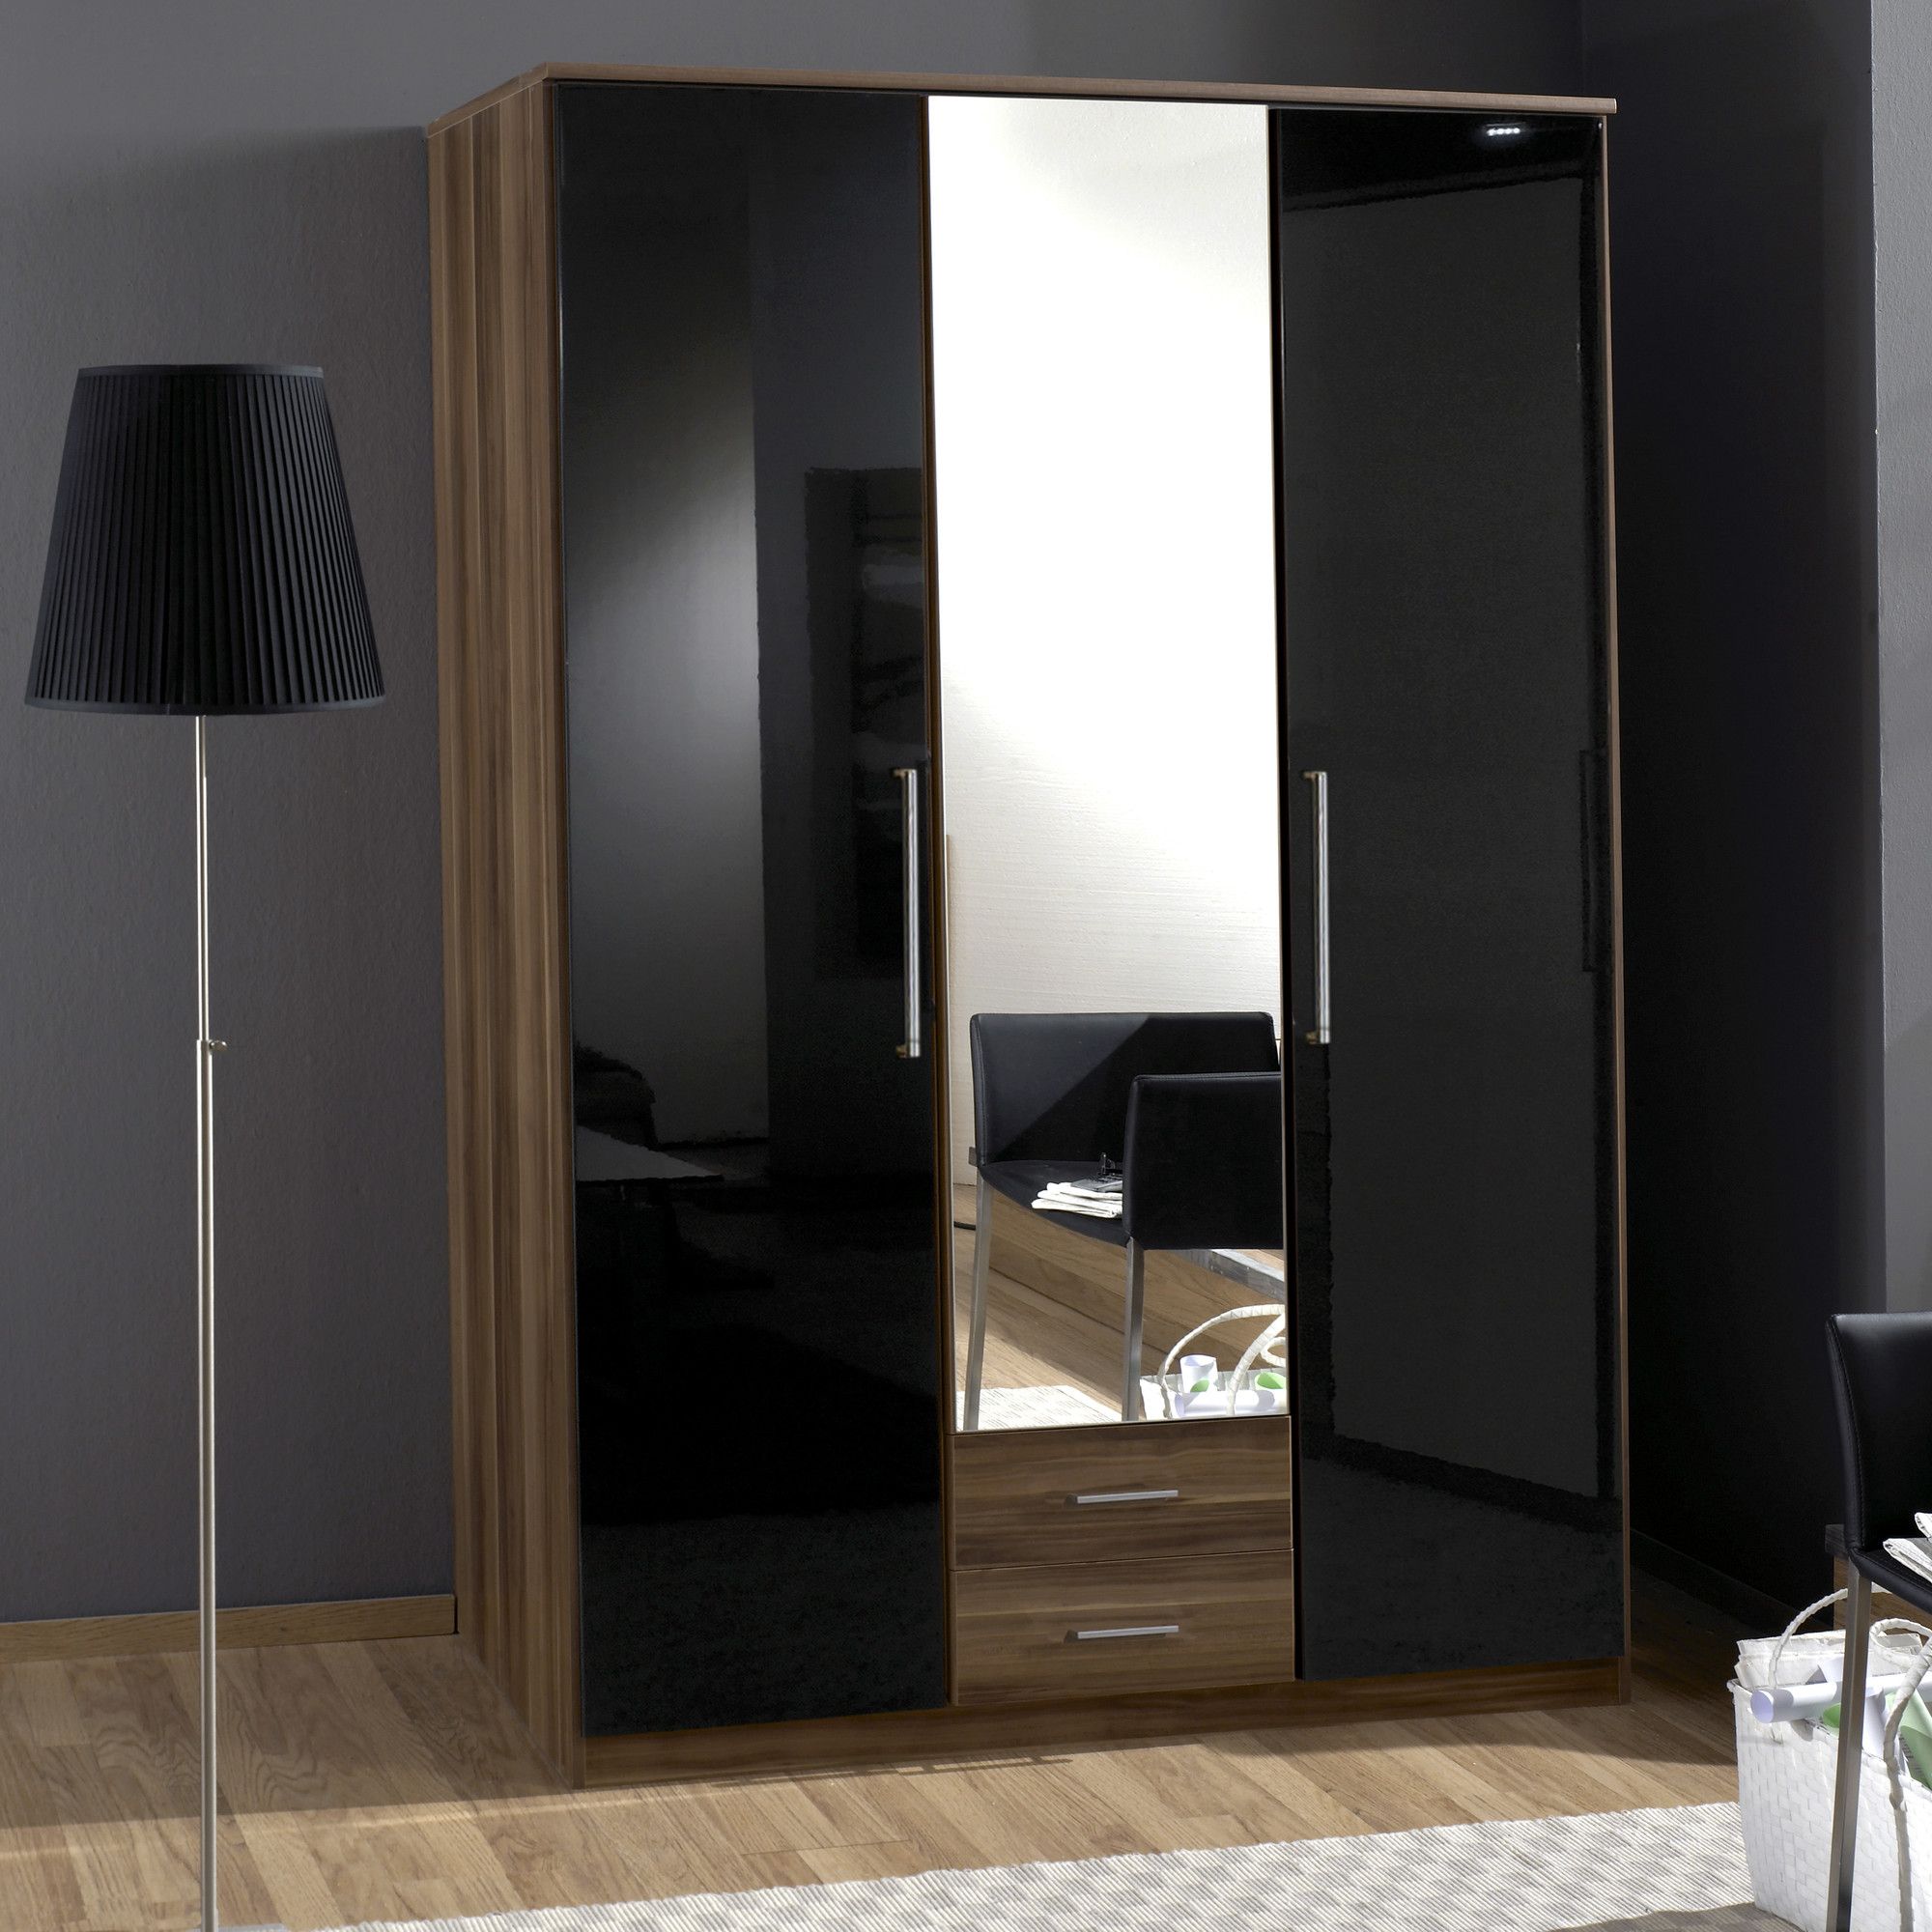 Amos Mann furniture Milano 3 Door 2 Drawer Wardrobe - Black and Walnut at Tesco Direct